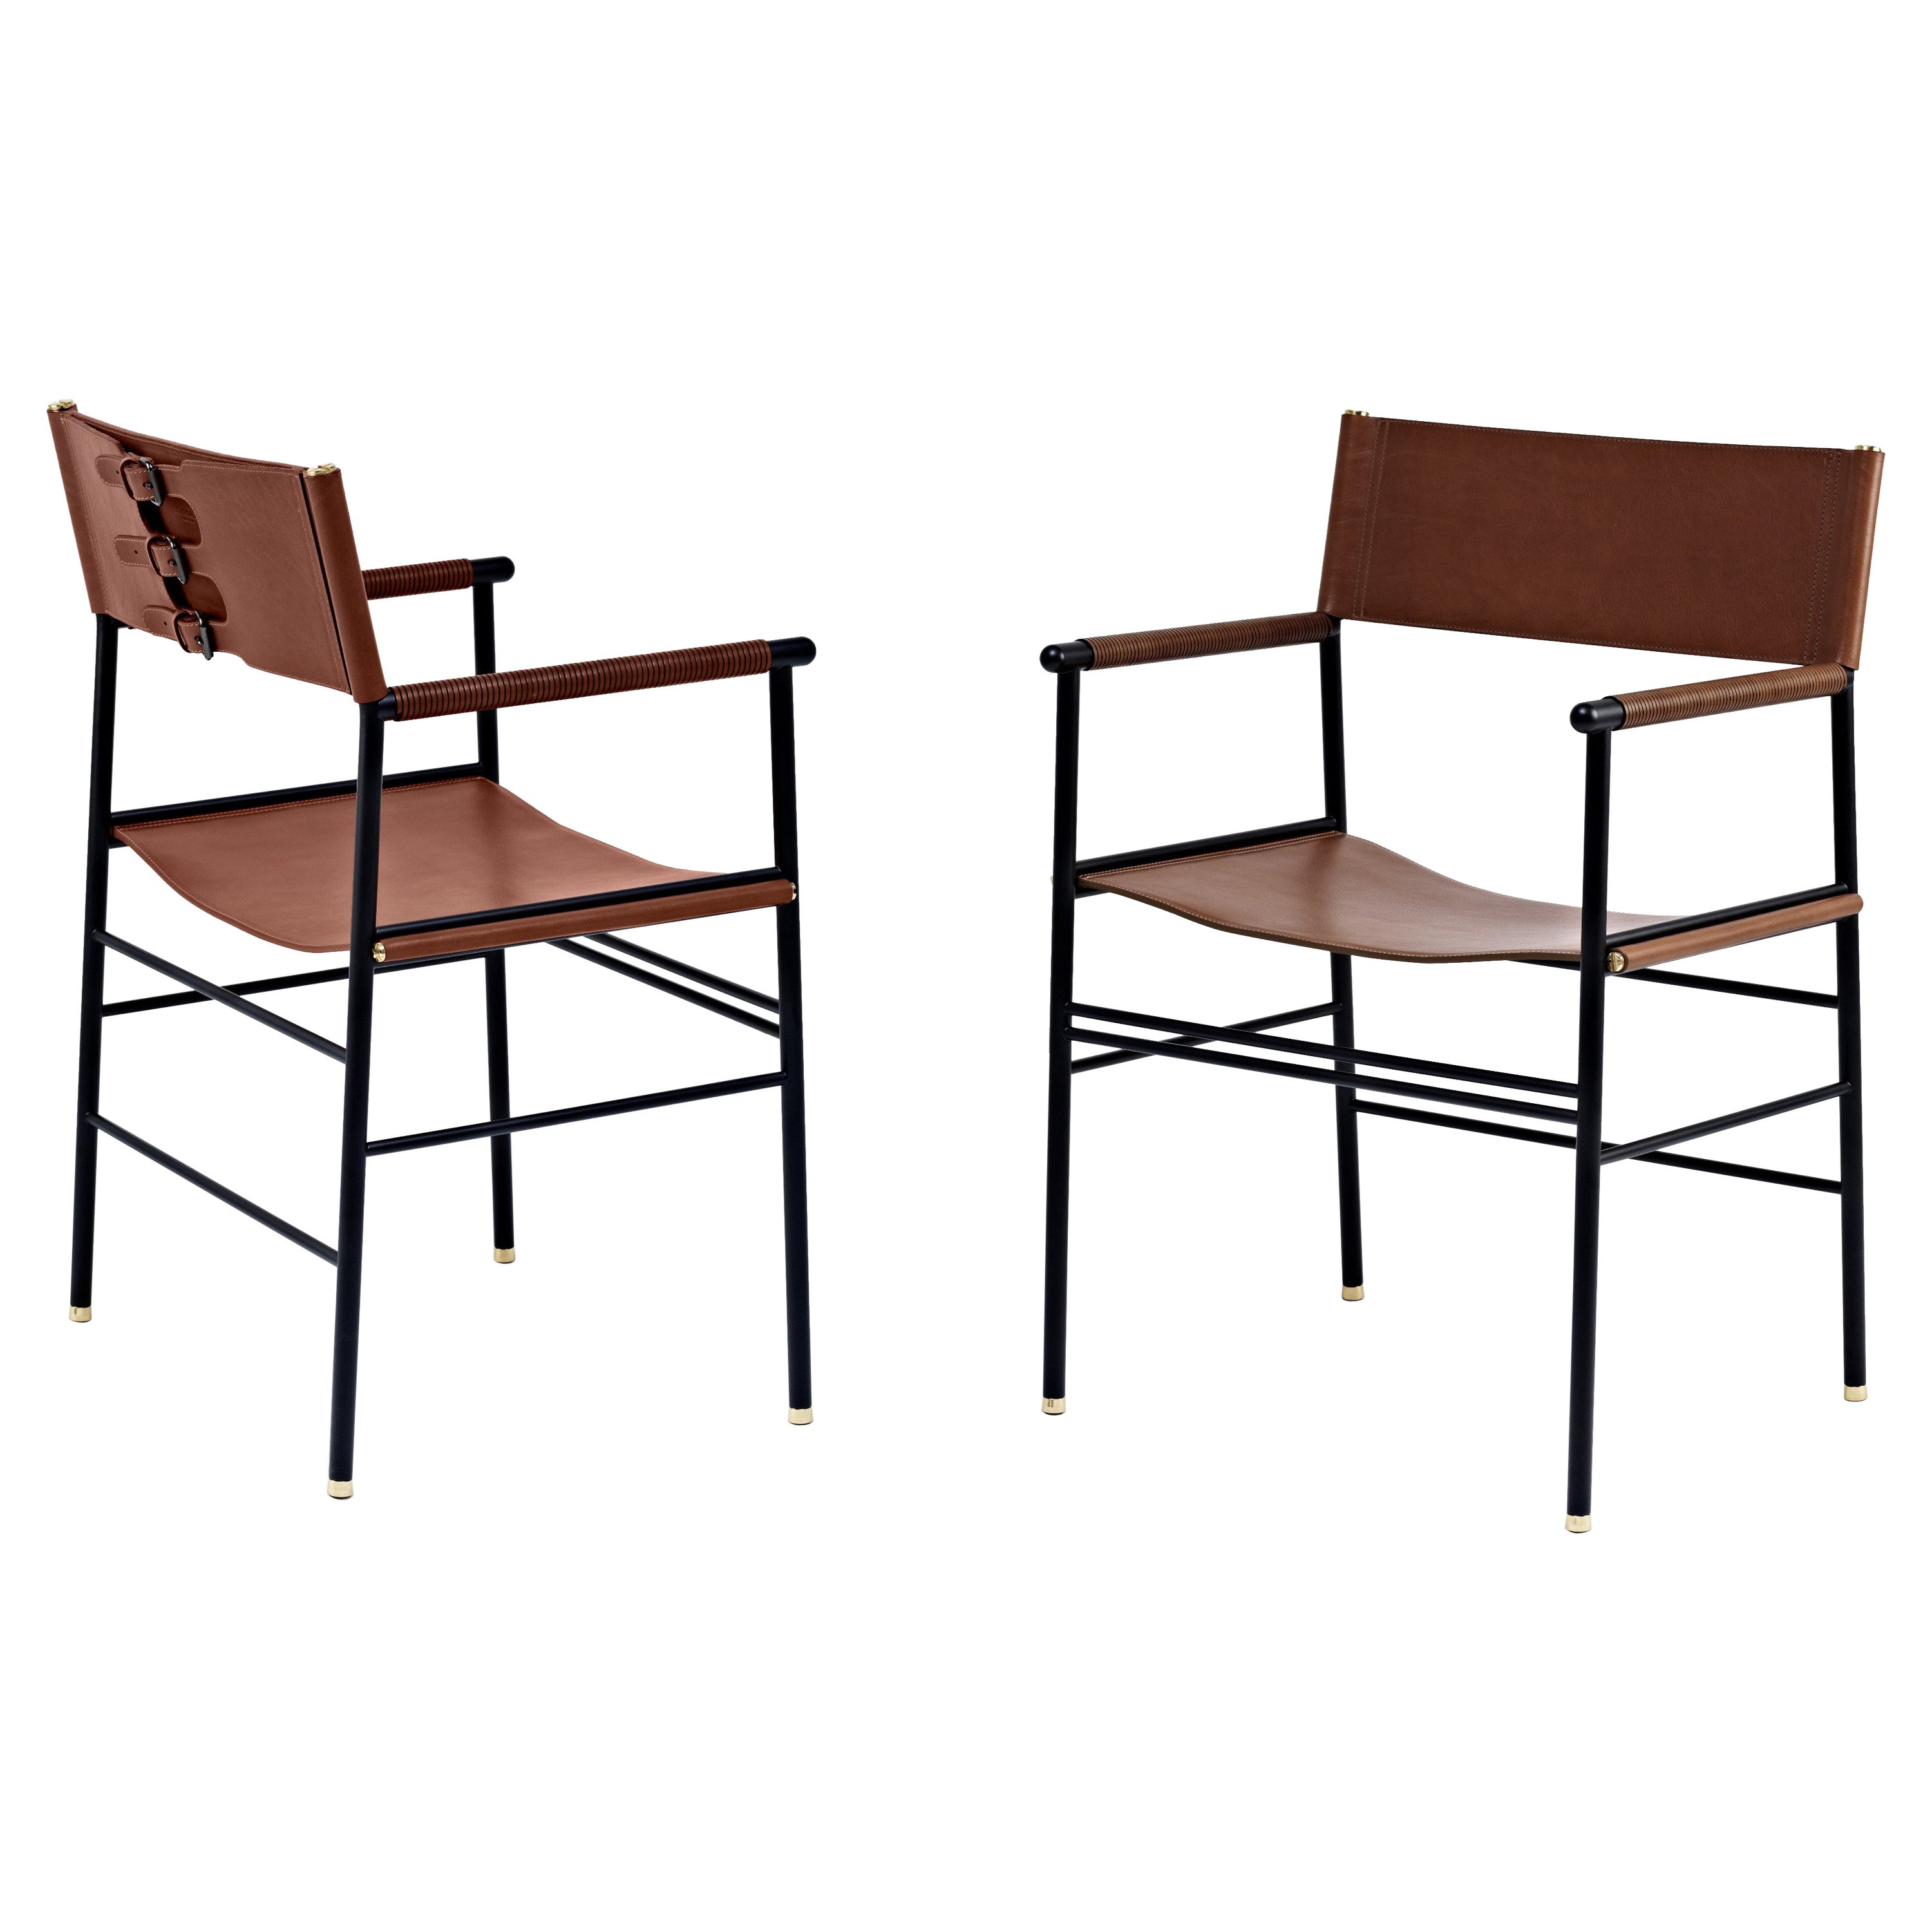 Paire de fauteuils contemporains intemporels en cuir brun foncé et métal en caoutchouc noir